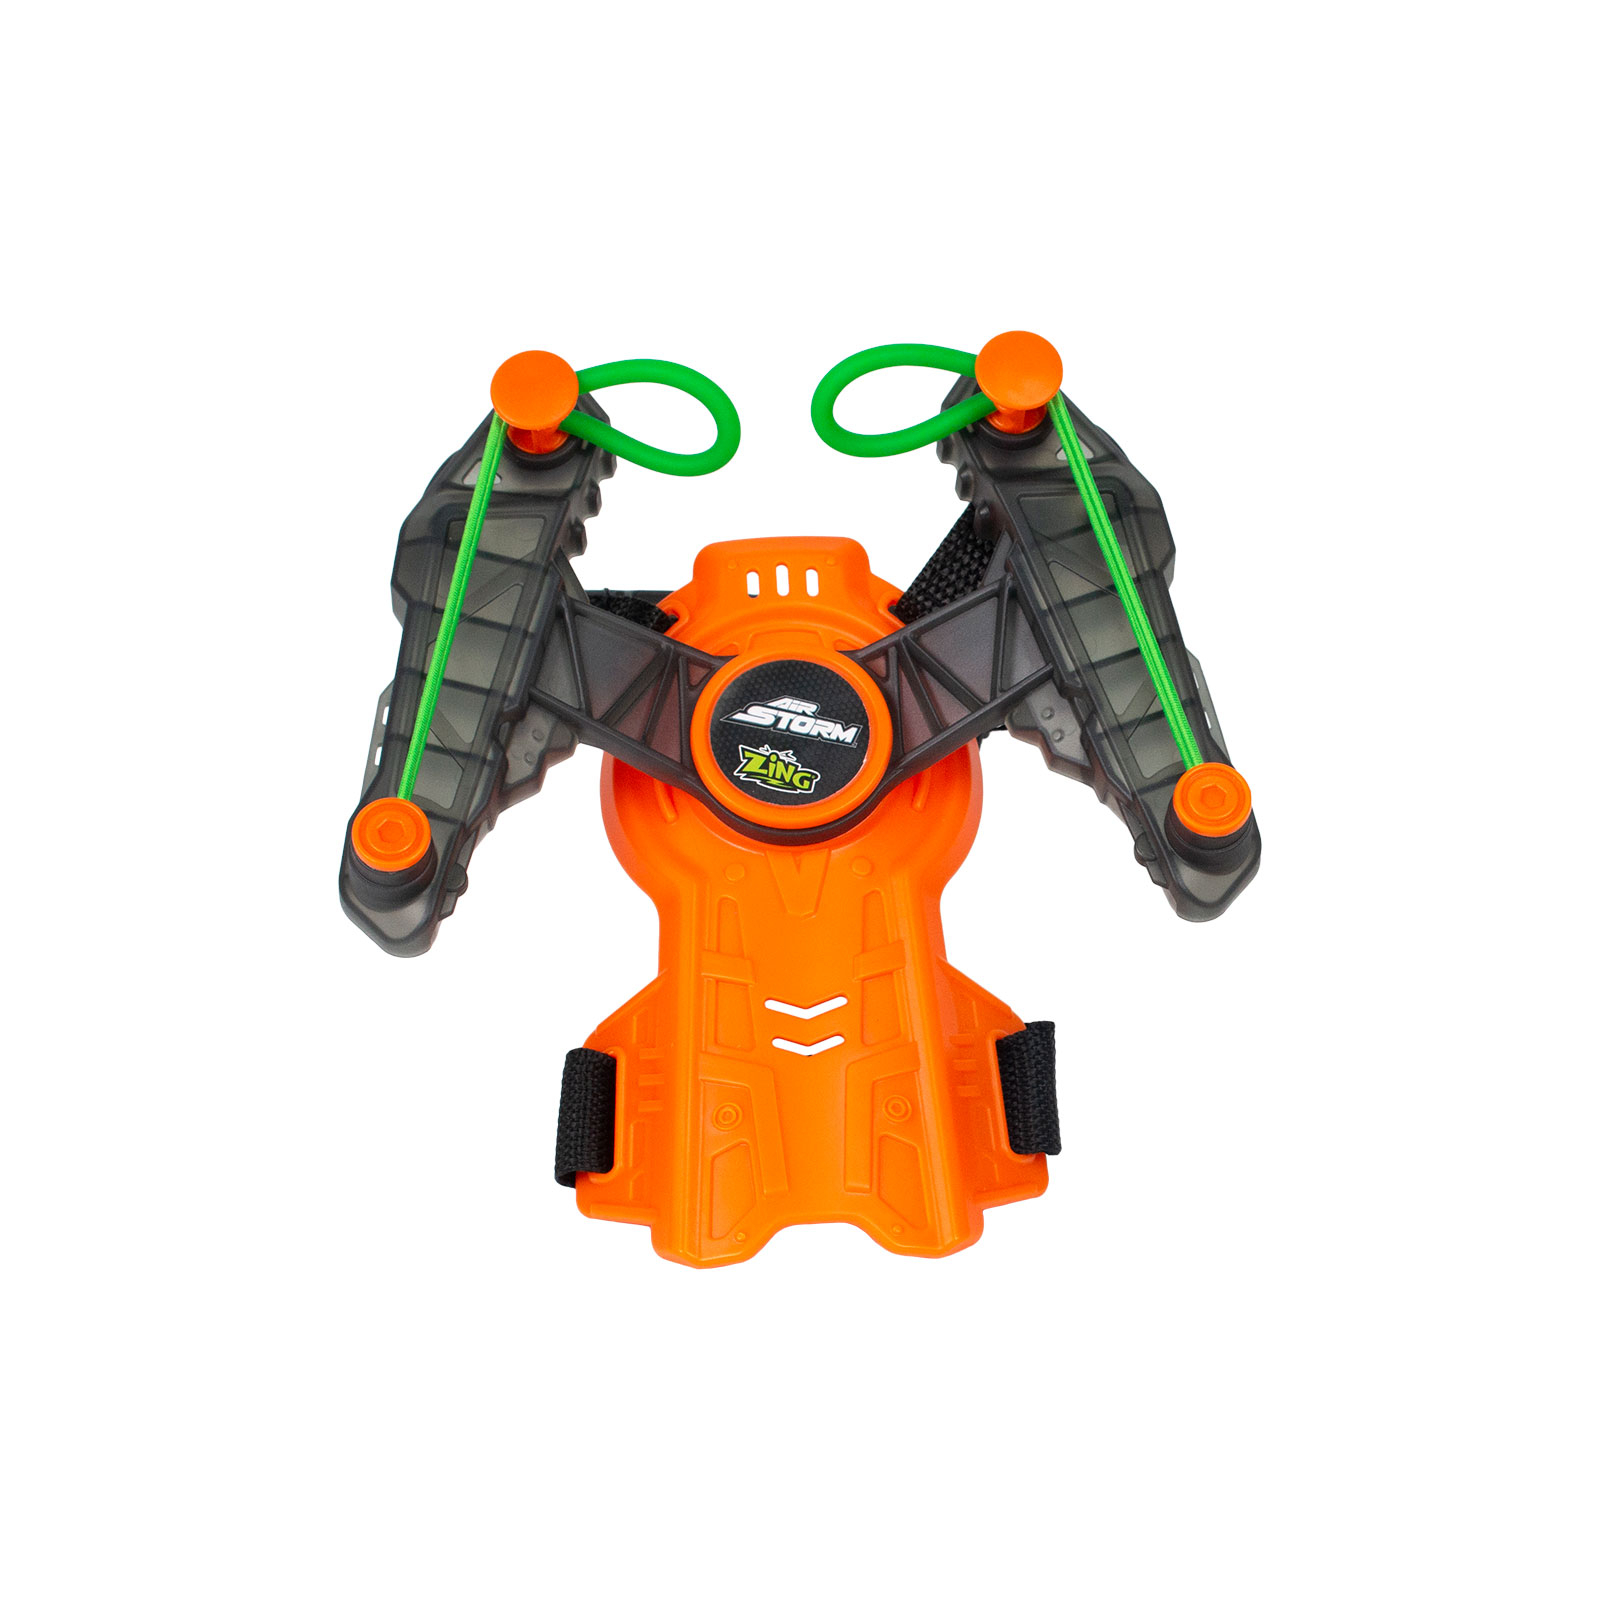 Игрушечное оружие Zing лук на запястье Air Storm - Wrist bow оранж (AS140O) изображение 2